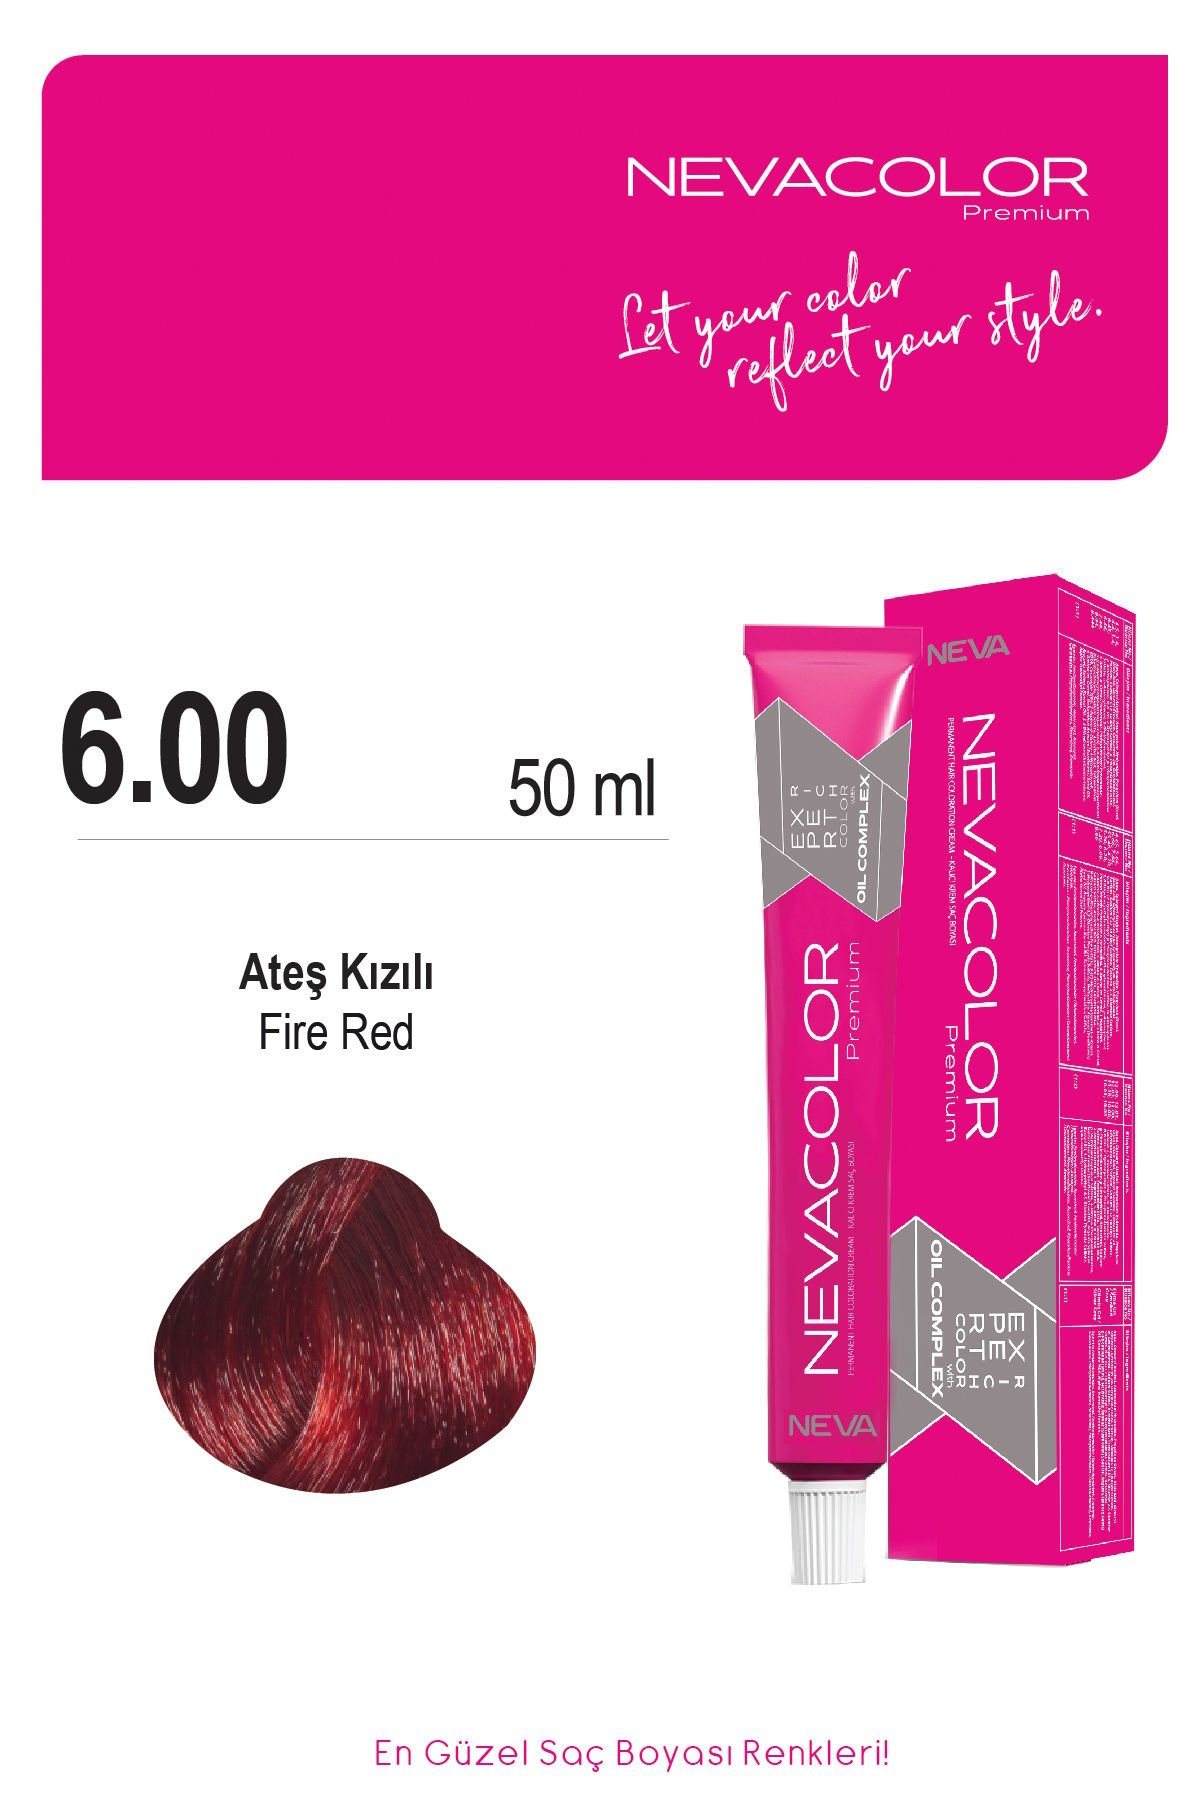 Nevacolor Premium 6.00 Ateş Kızıl - Kalıcı Krem Saç Boyası 50 g Tüp